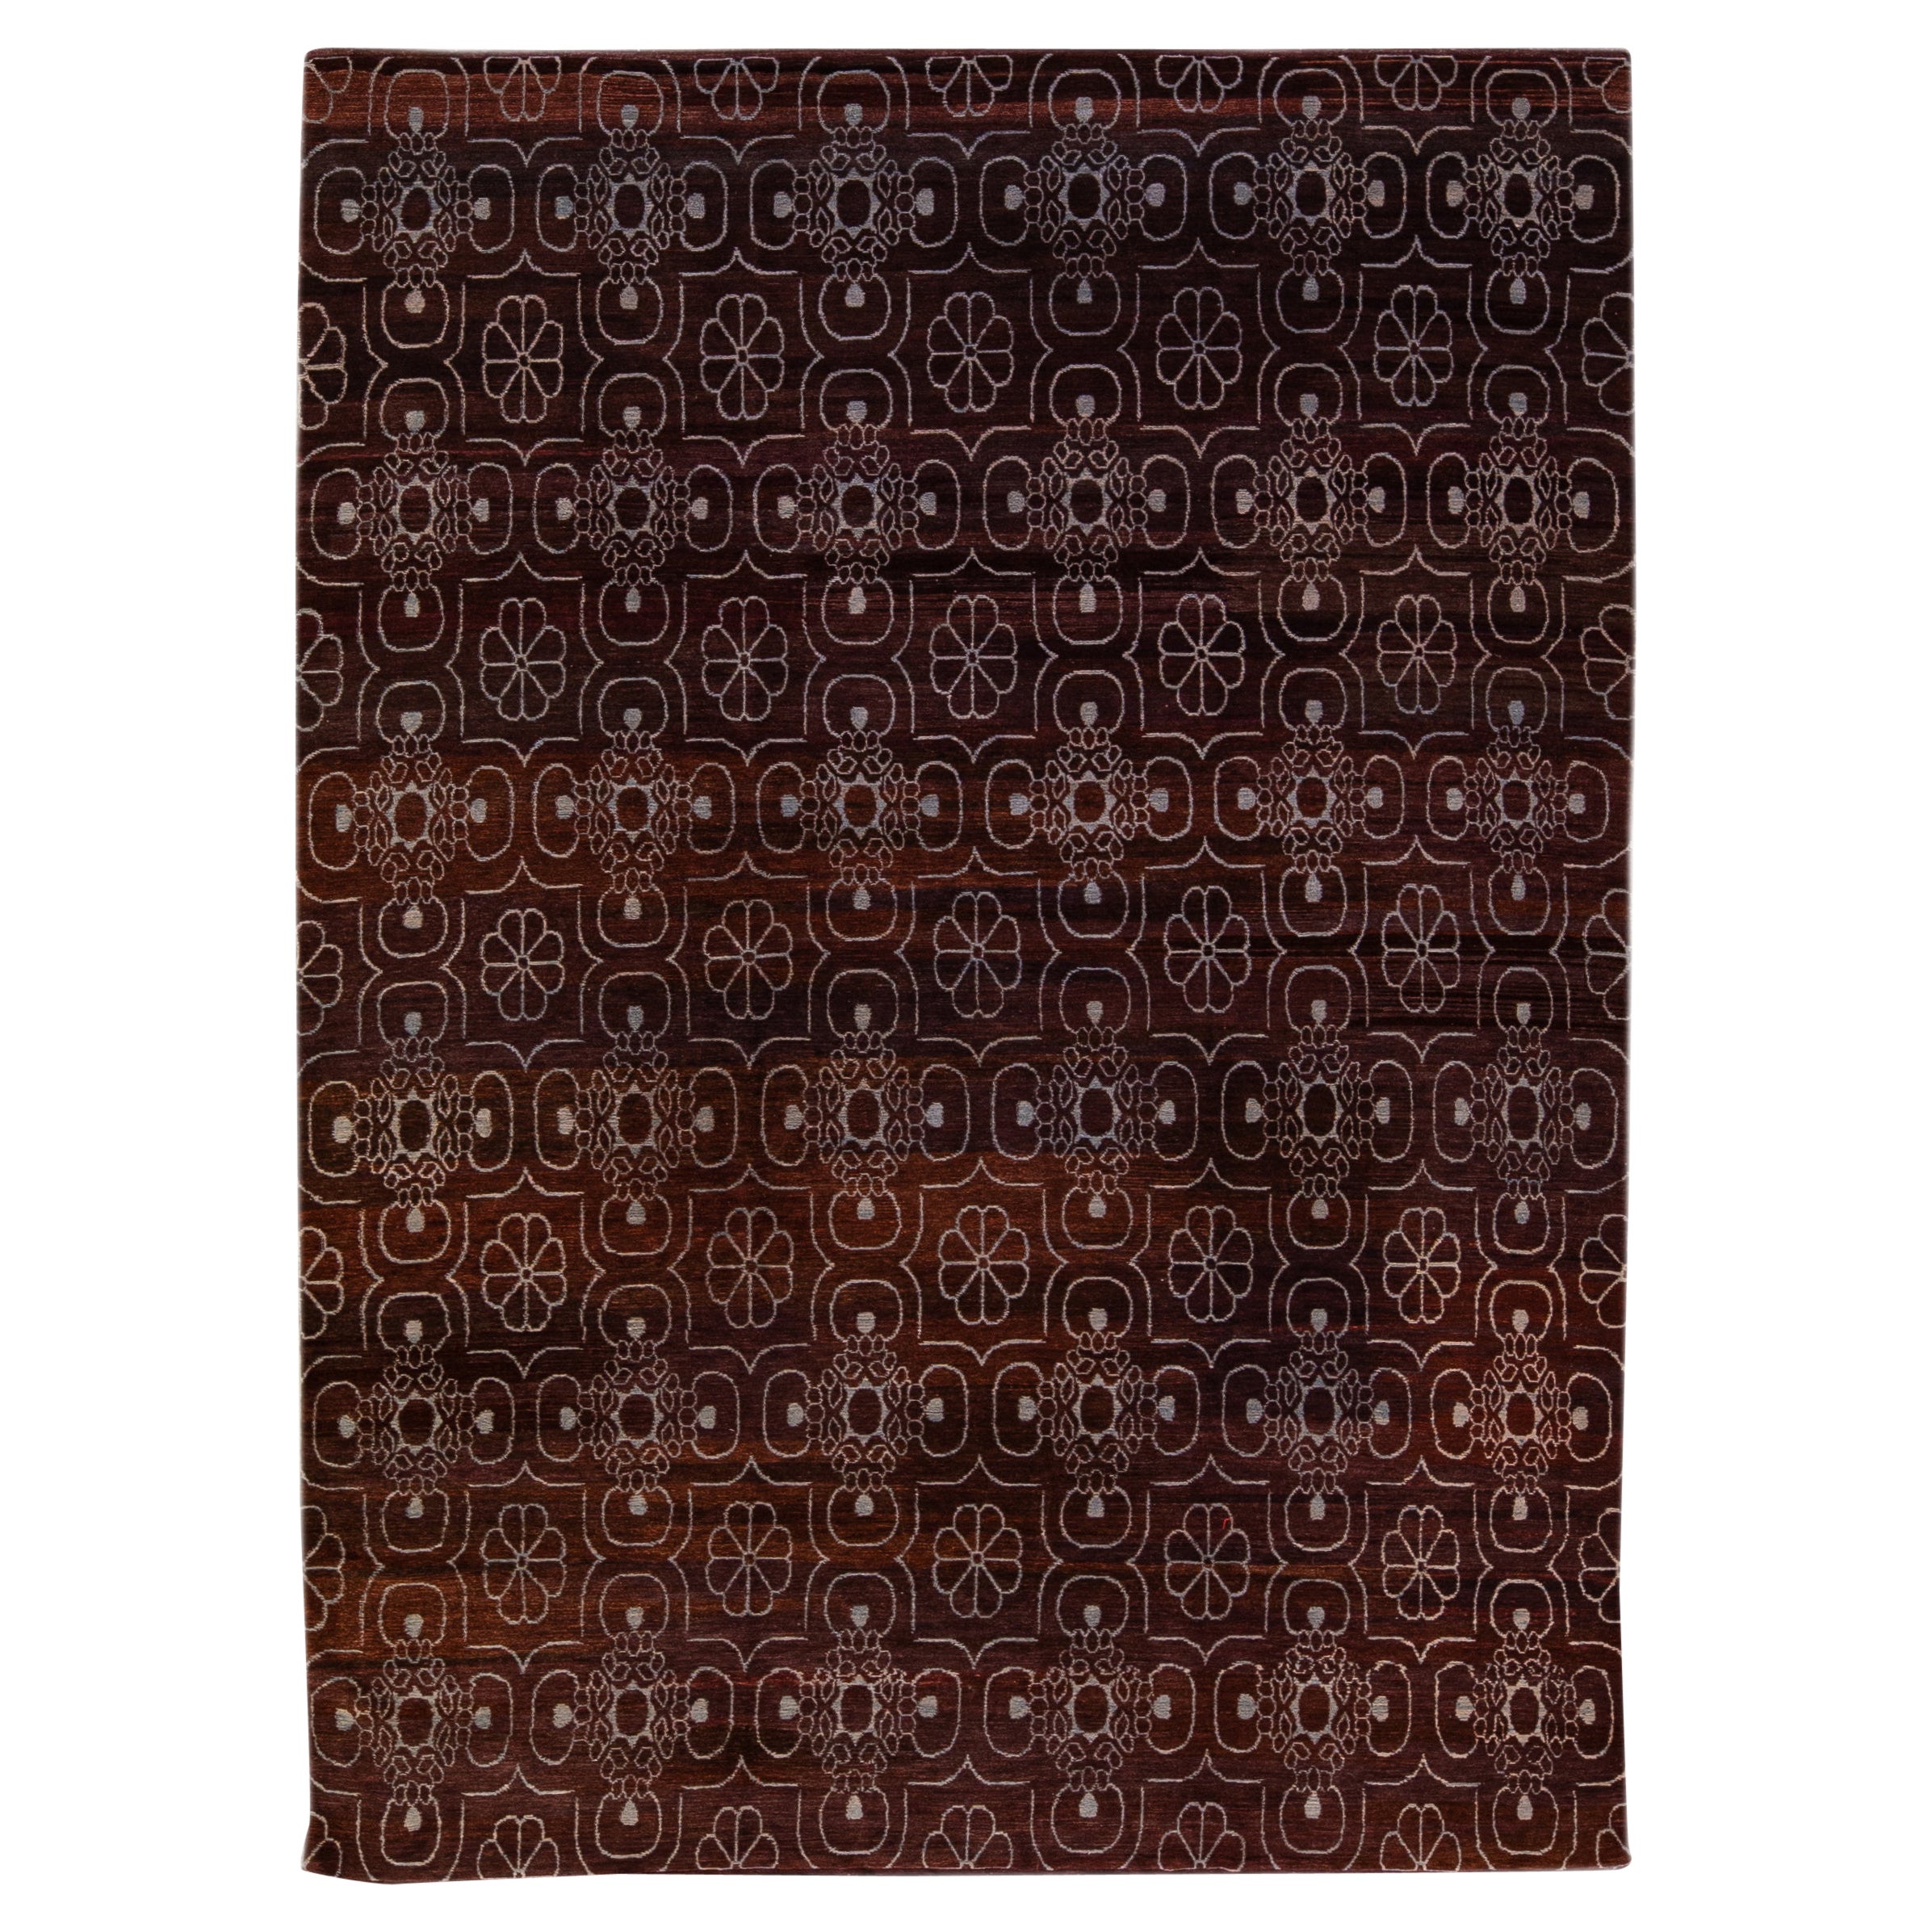 Handgefertigter burgunderroter Teppich aus Wolle und Seide im modernen tibetischen Arabesque-Stil